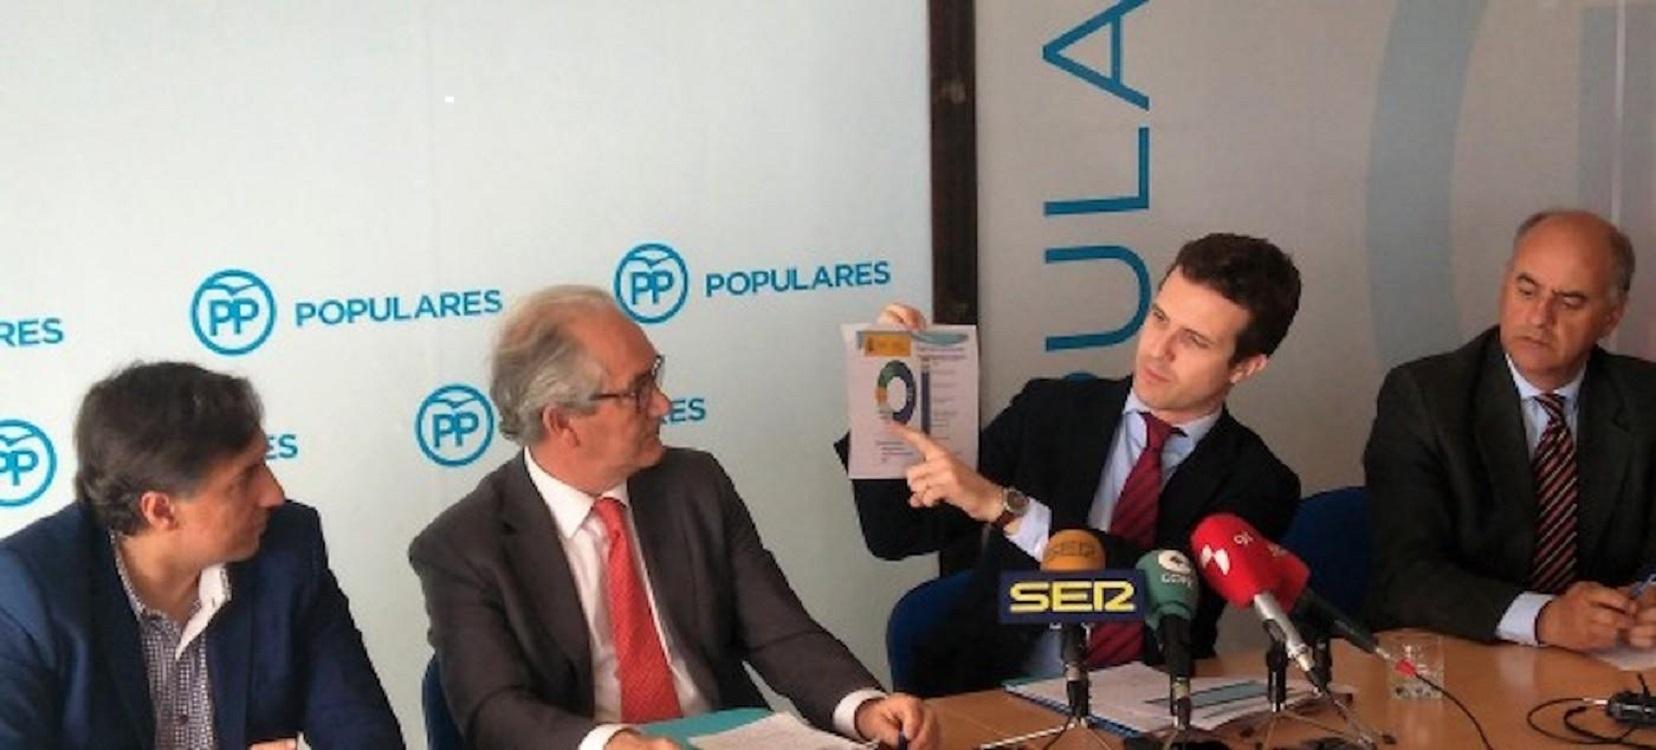 En el centro de la imagen, Sebastián González, y el presidente del partido, Pablo Casado. PP